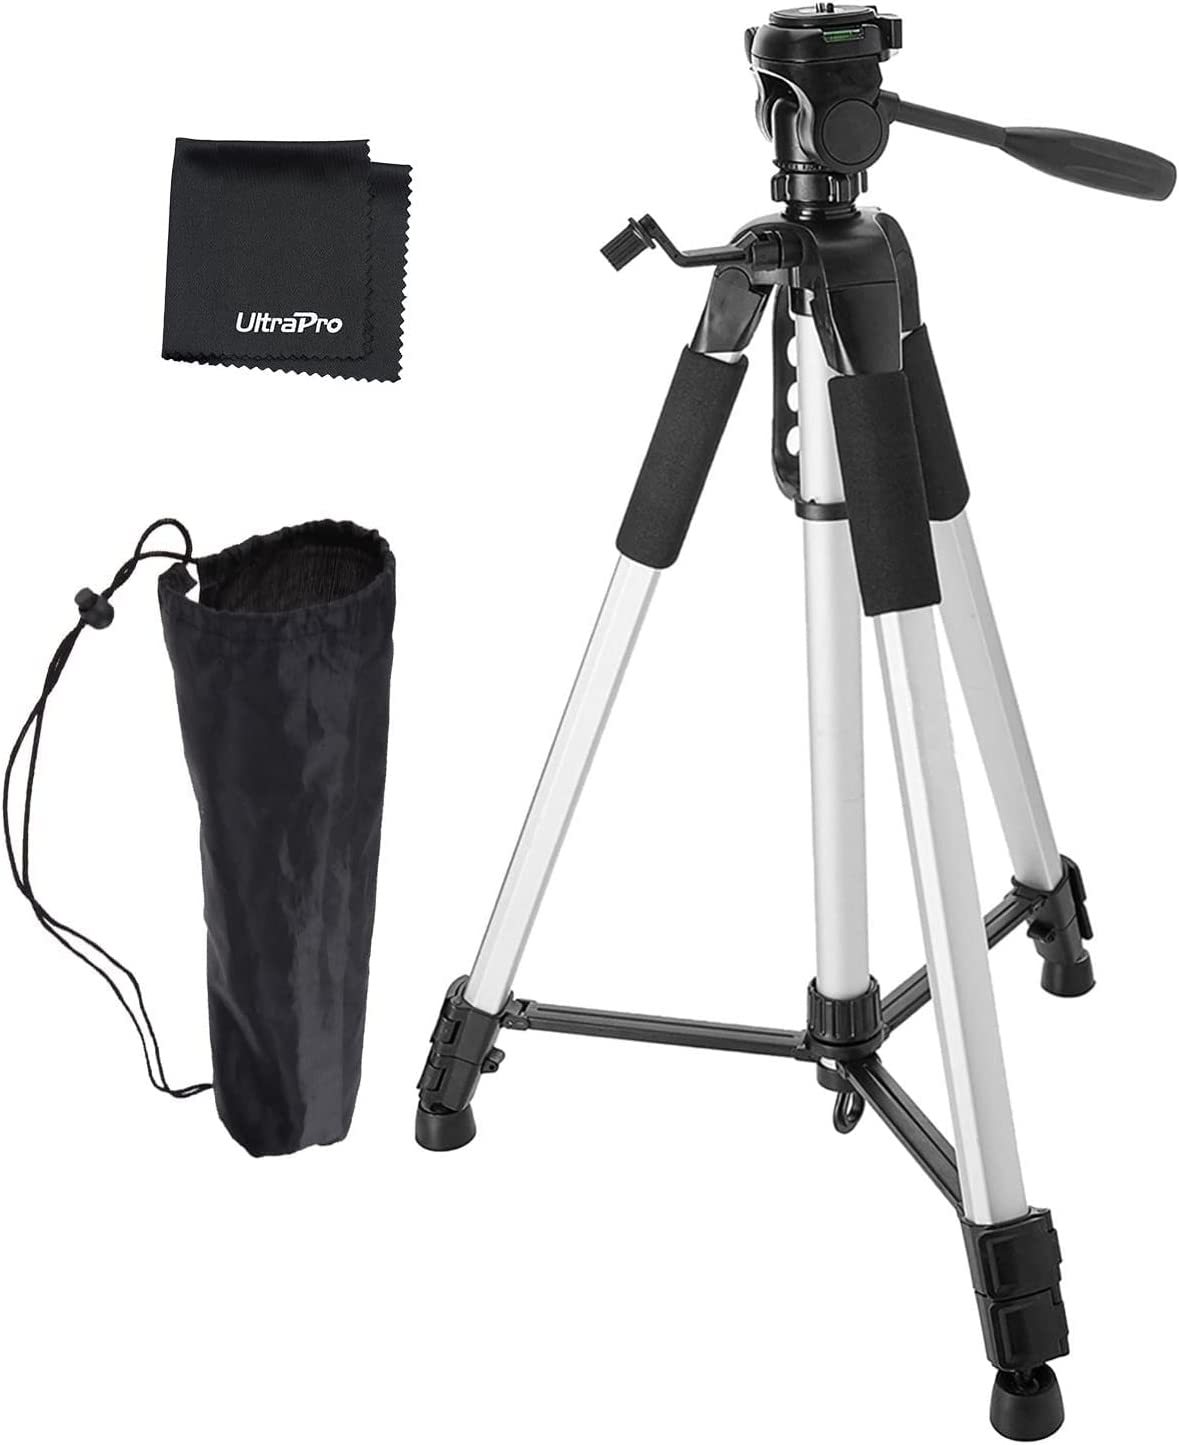 Ultrapro 72" Inch Aluminum Camera Tripod Bundle For Canon, Nikon, Sony, Samsung, - $64.99